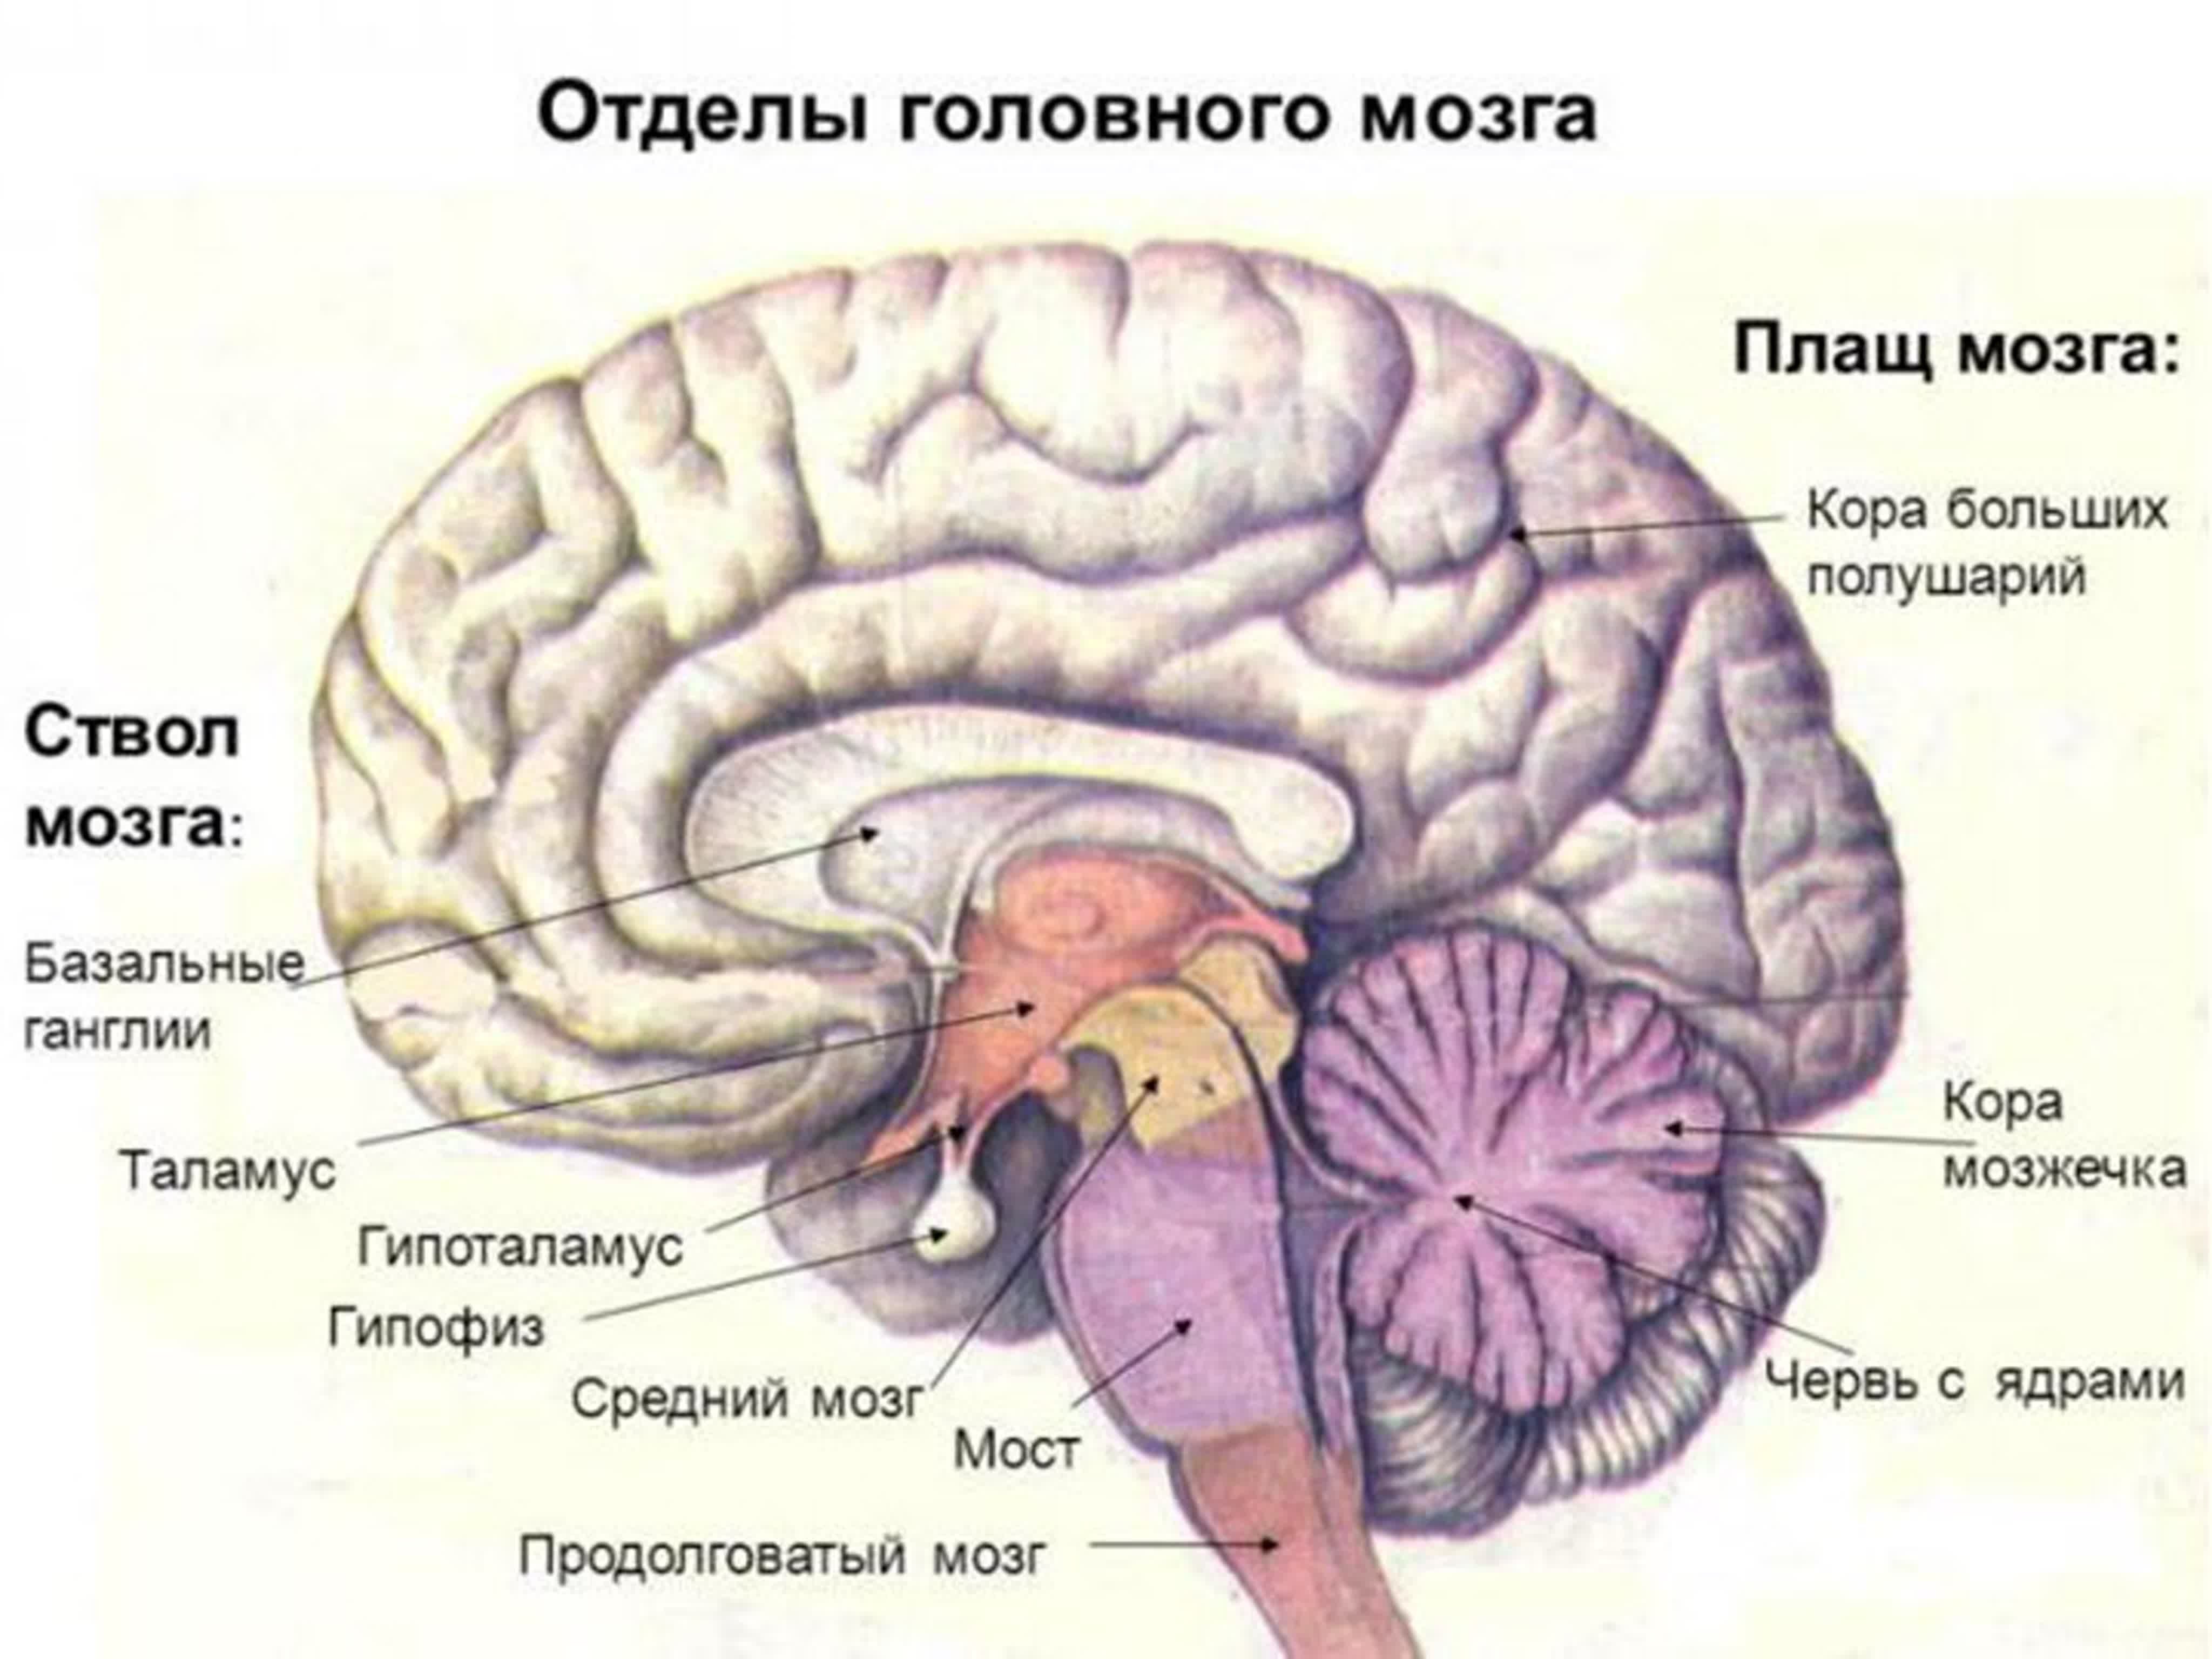 Гипофиз в голове. Функции отделов головного мозга рисунок. Функции отделов головного мозга анатомия. Отделы головного мозга и основные структуры отделов. Отделы головного мозга.строение больших полушарий.